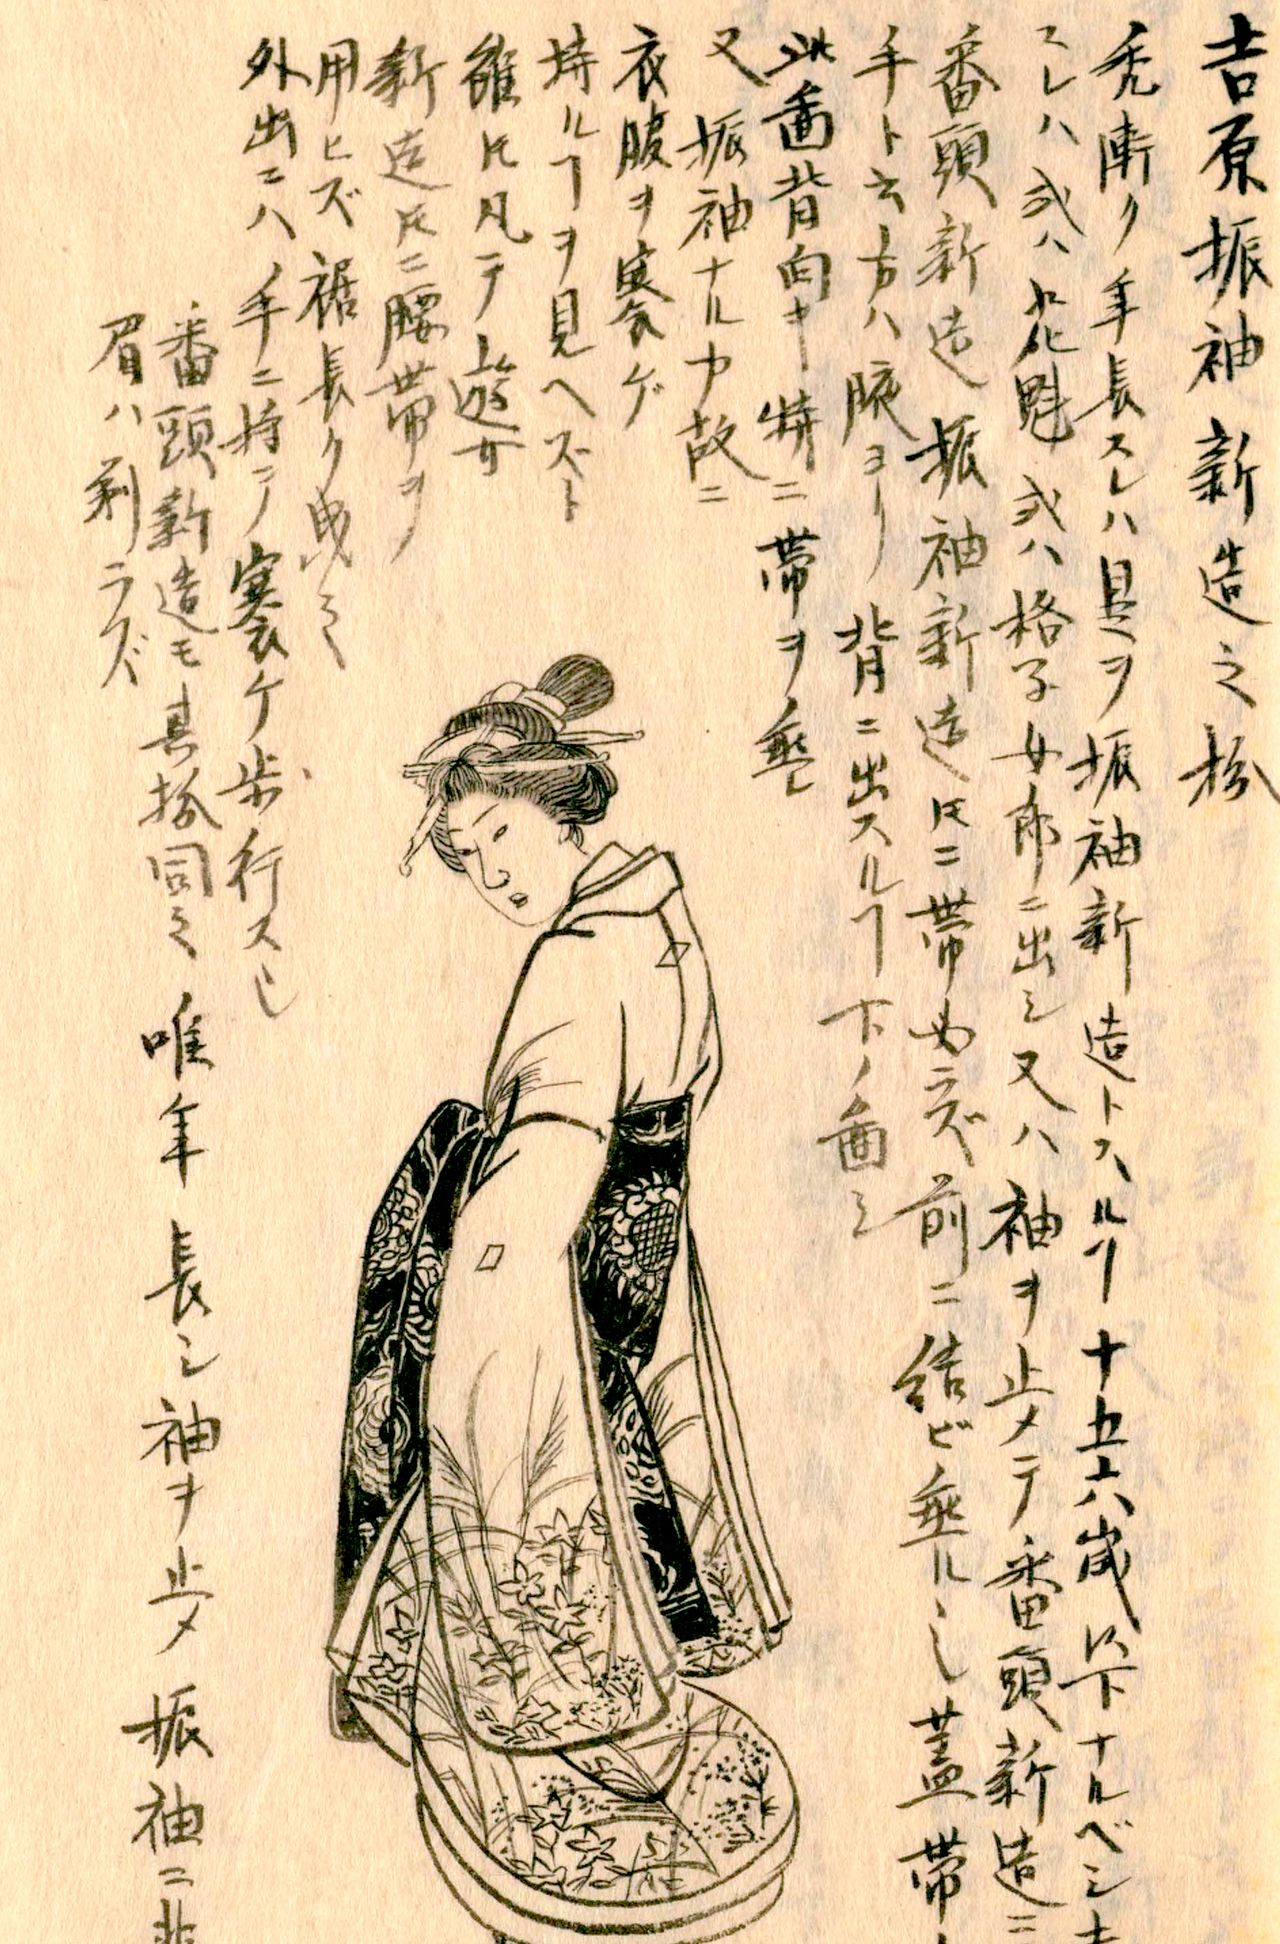 A shinzō at Yoshiwara. From Morisada mankō (Morisada’s Sketches). (Courtesy National Diet Library)